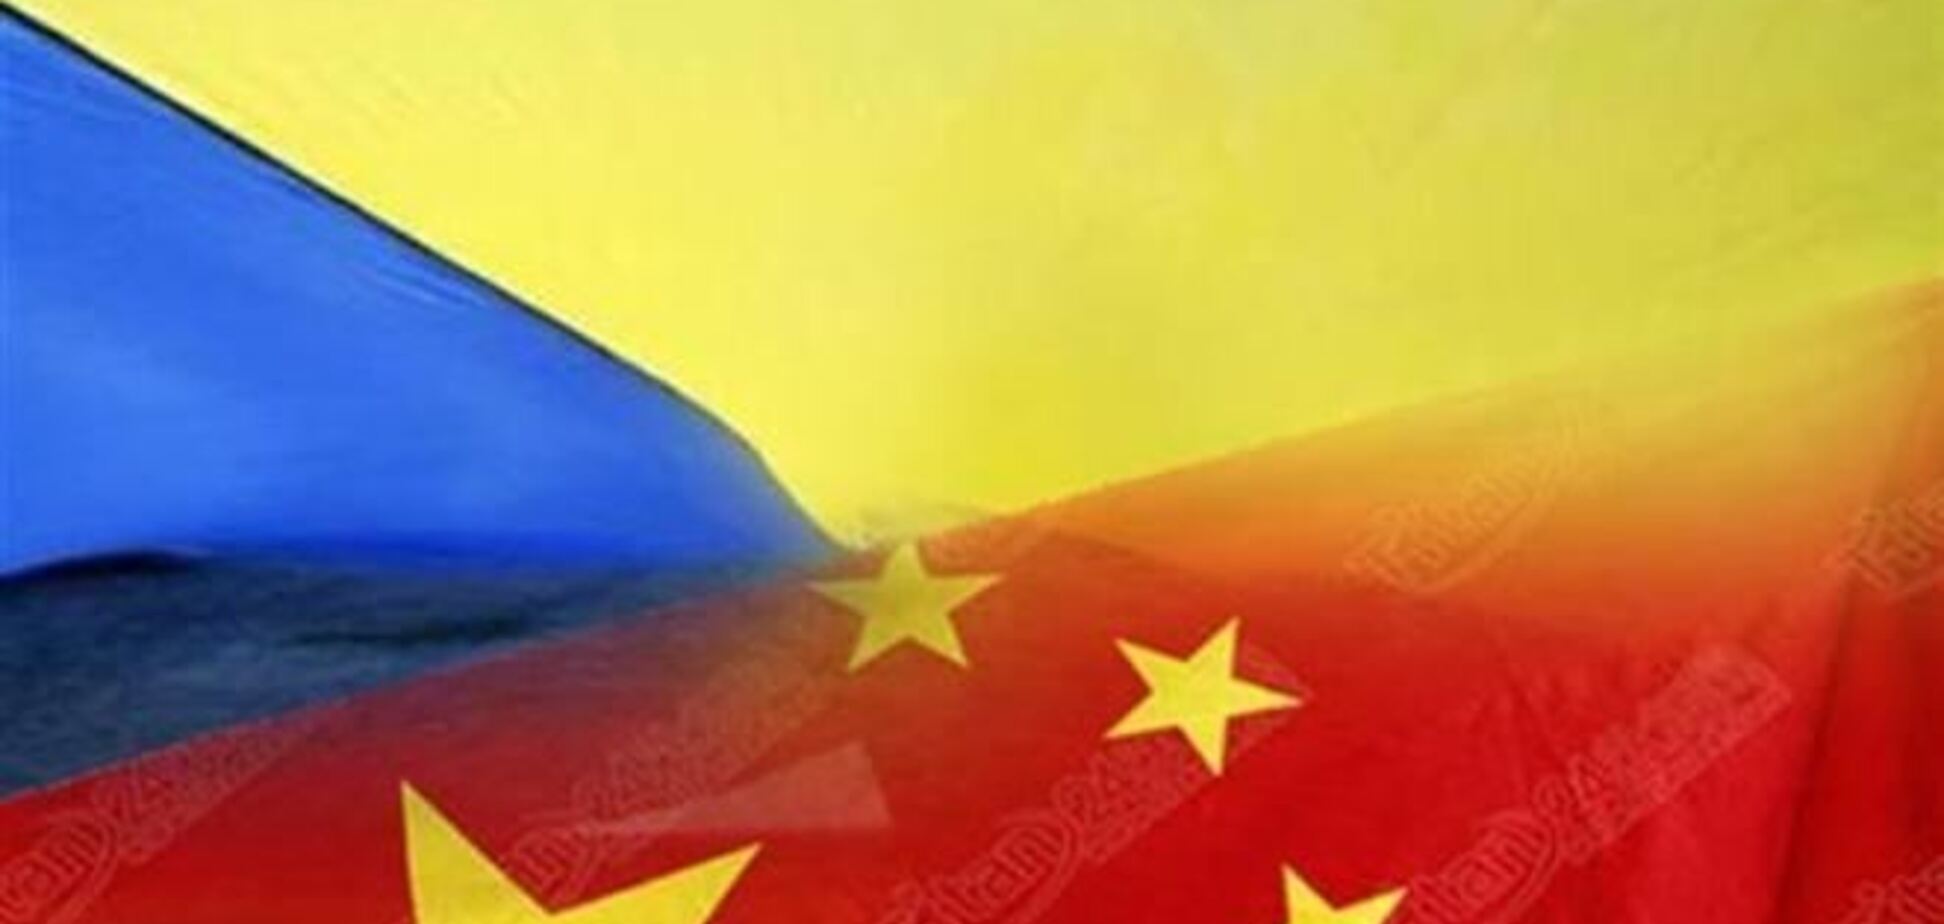 Економіст: на відміну від Росії та ЄС, Китай не чинить тиску на Україну, а приймає взаємовигідні умови